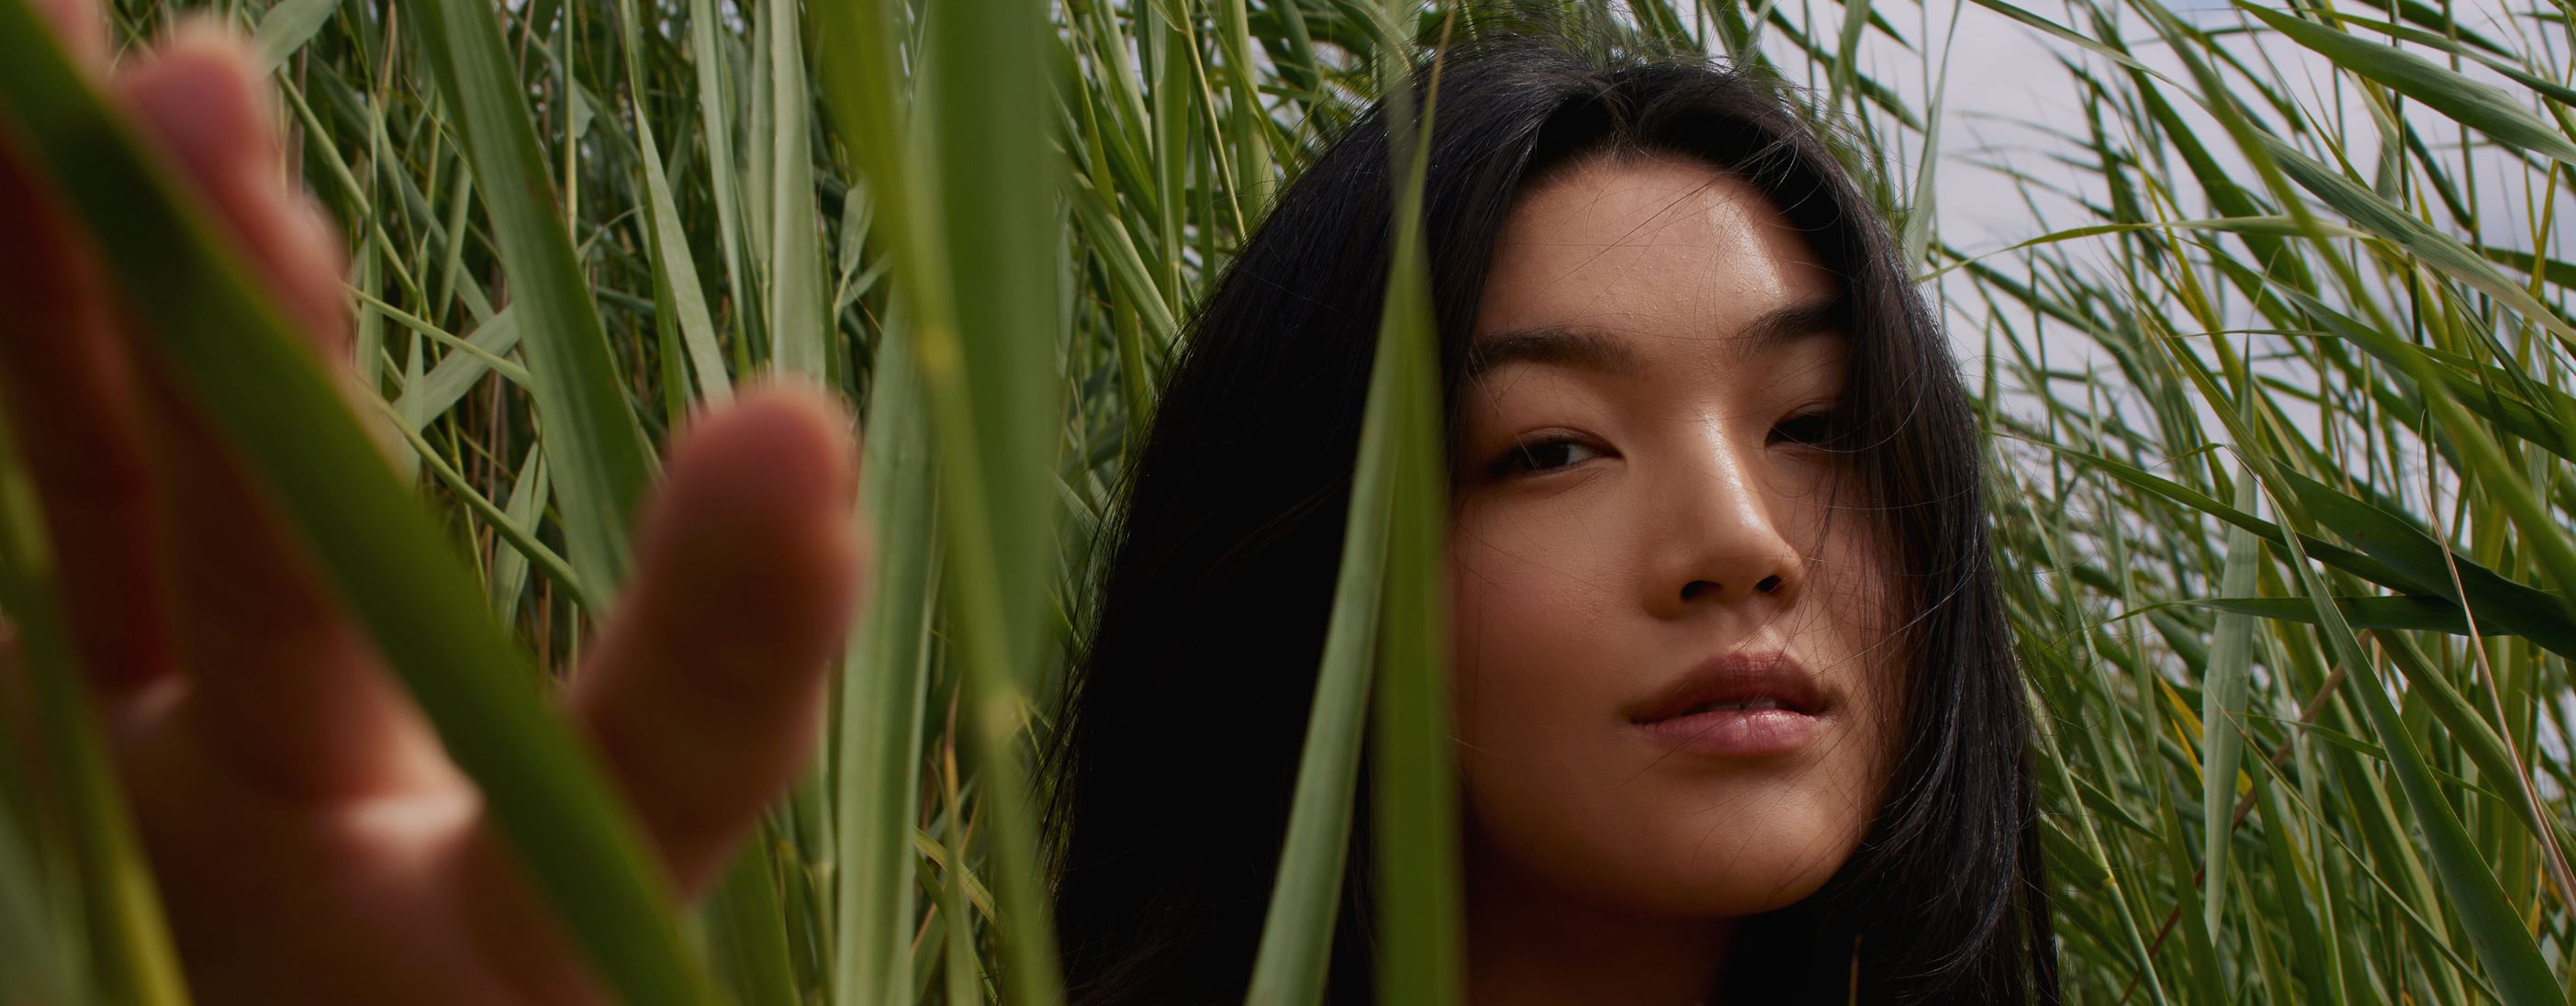 Aziatisch meisje staande in een groen veld